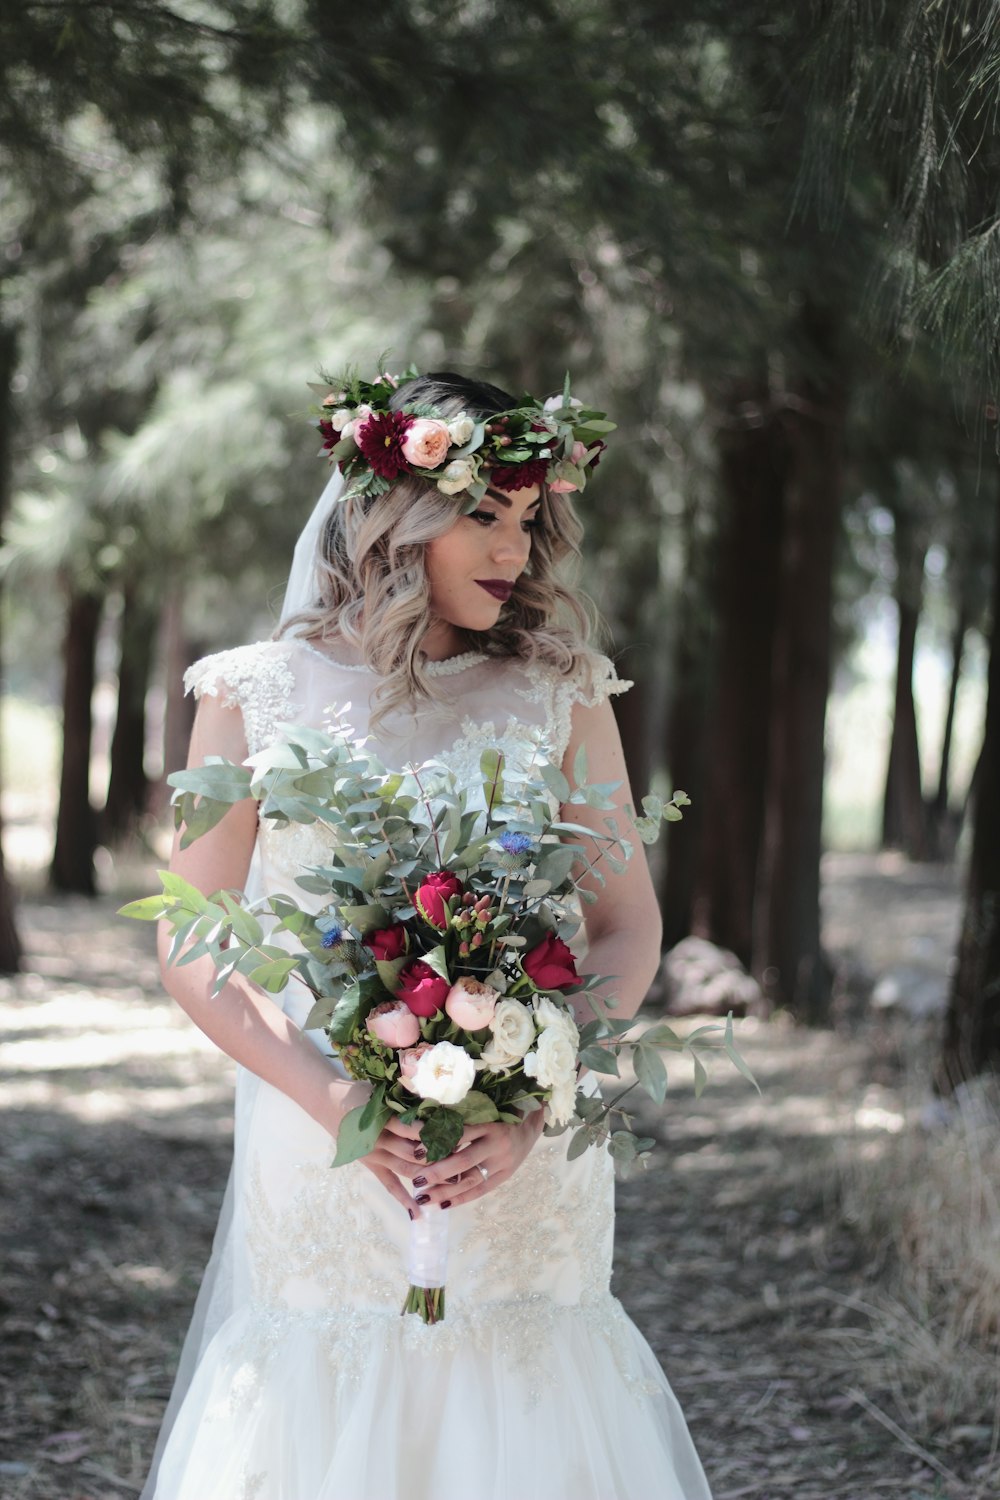 Frau im weißen Hochzeitskleid mit Blumenstrauß